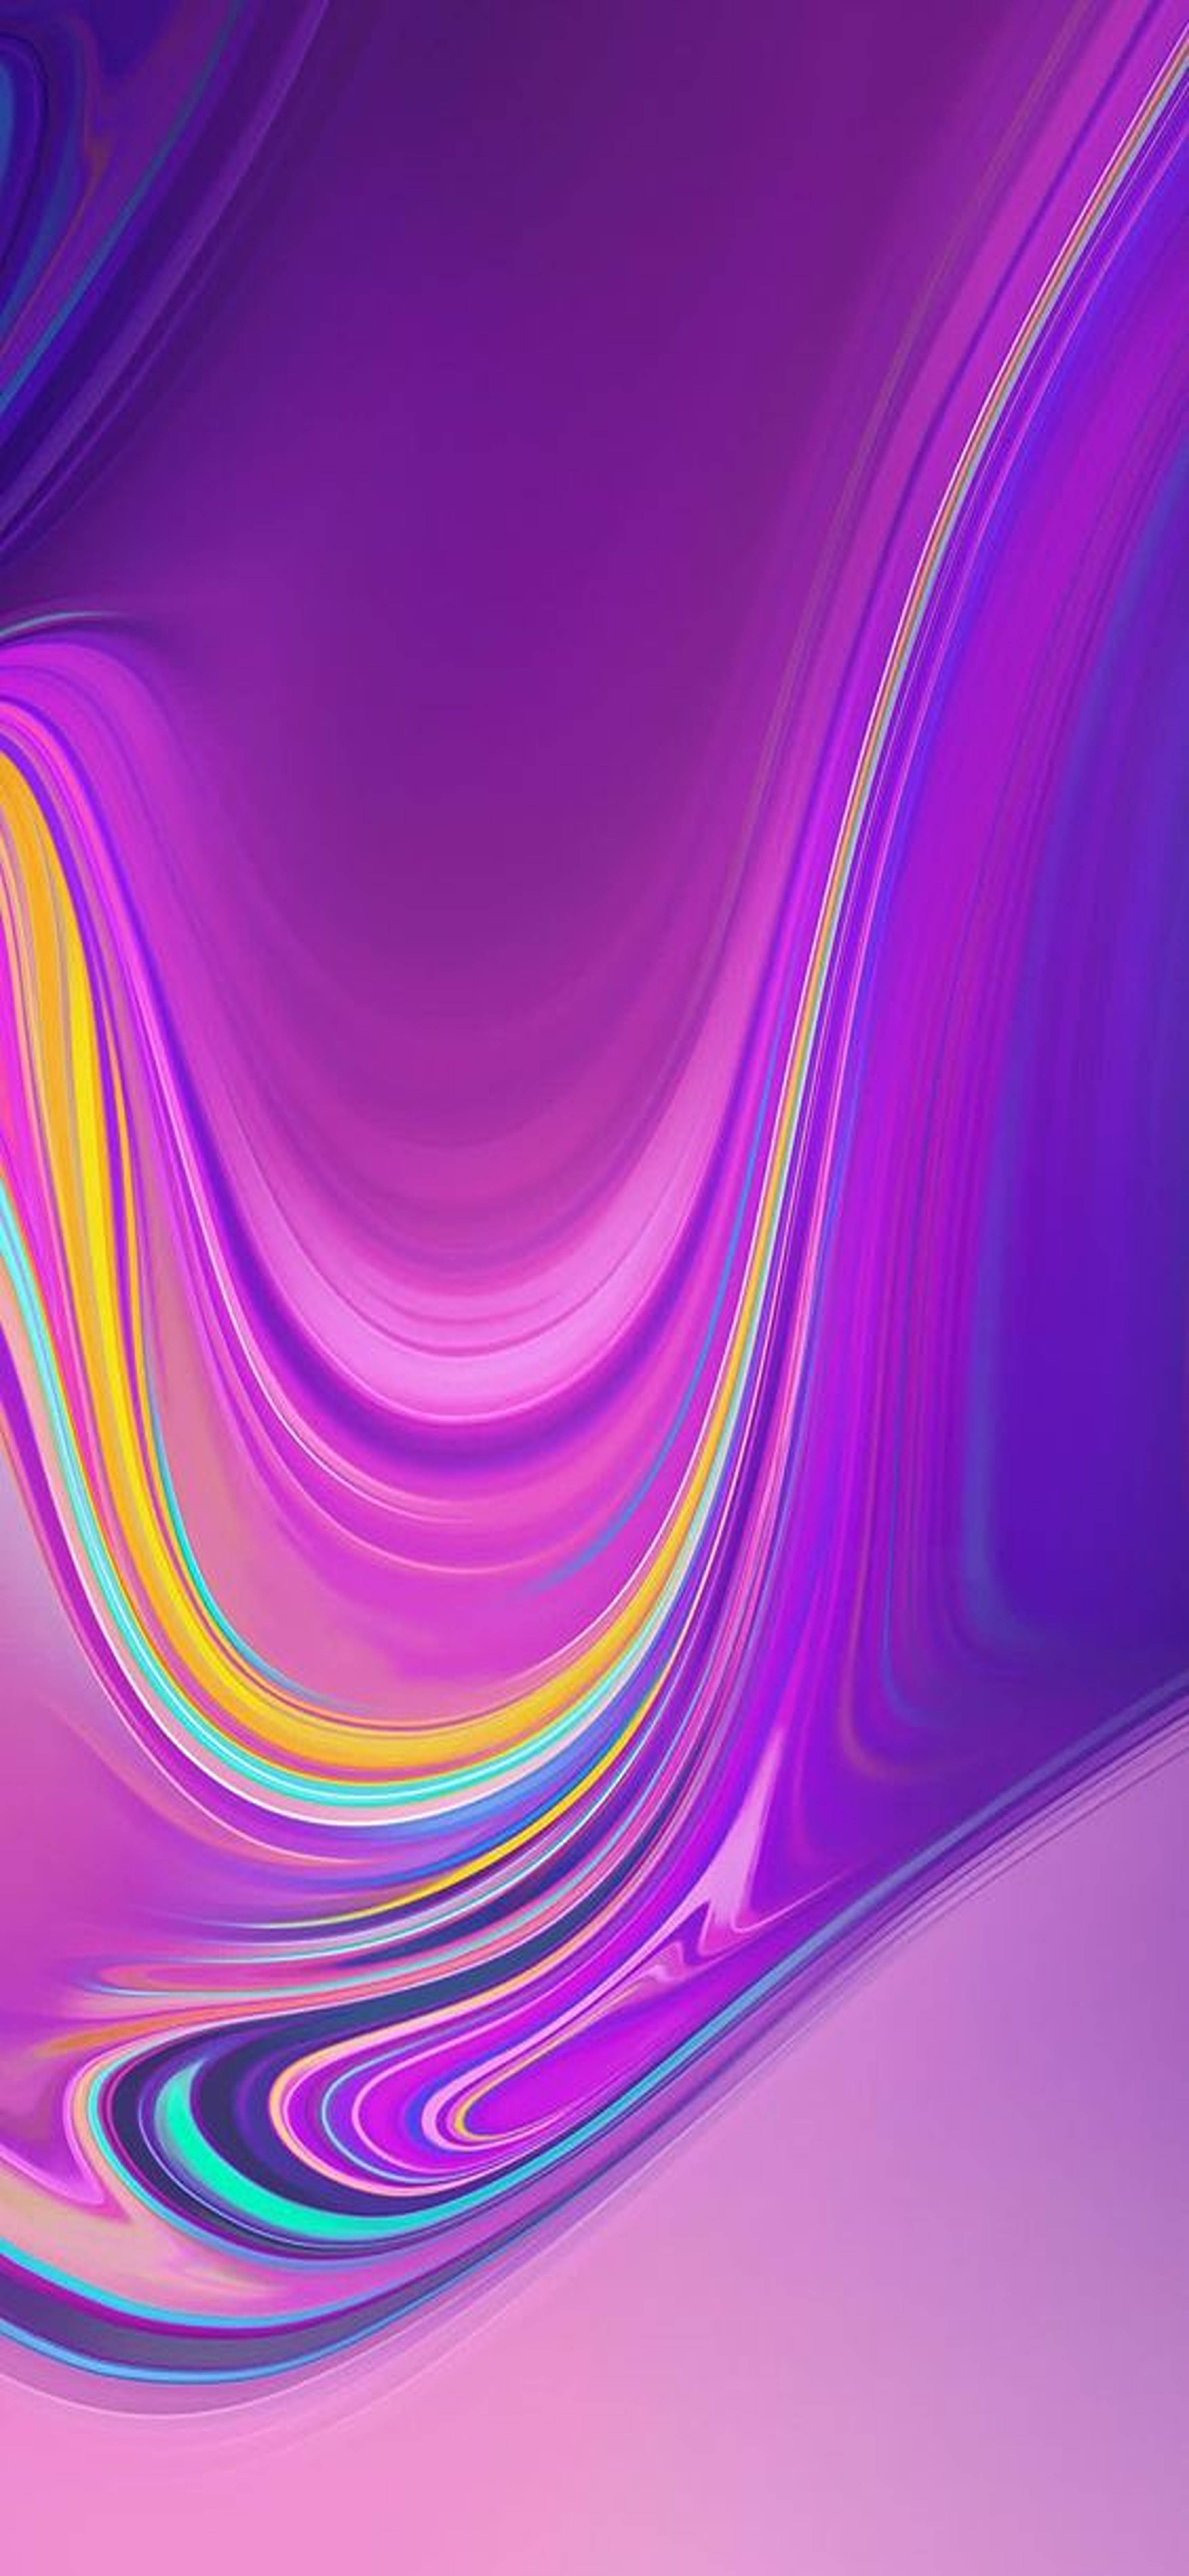 Abstract Purple Swirl Redmi Note 9 Pro Wallpaper